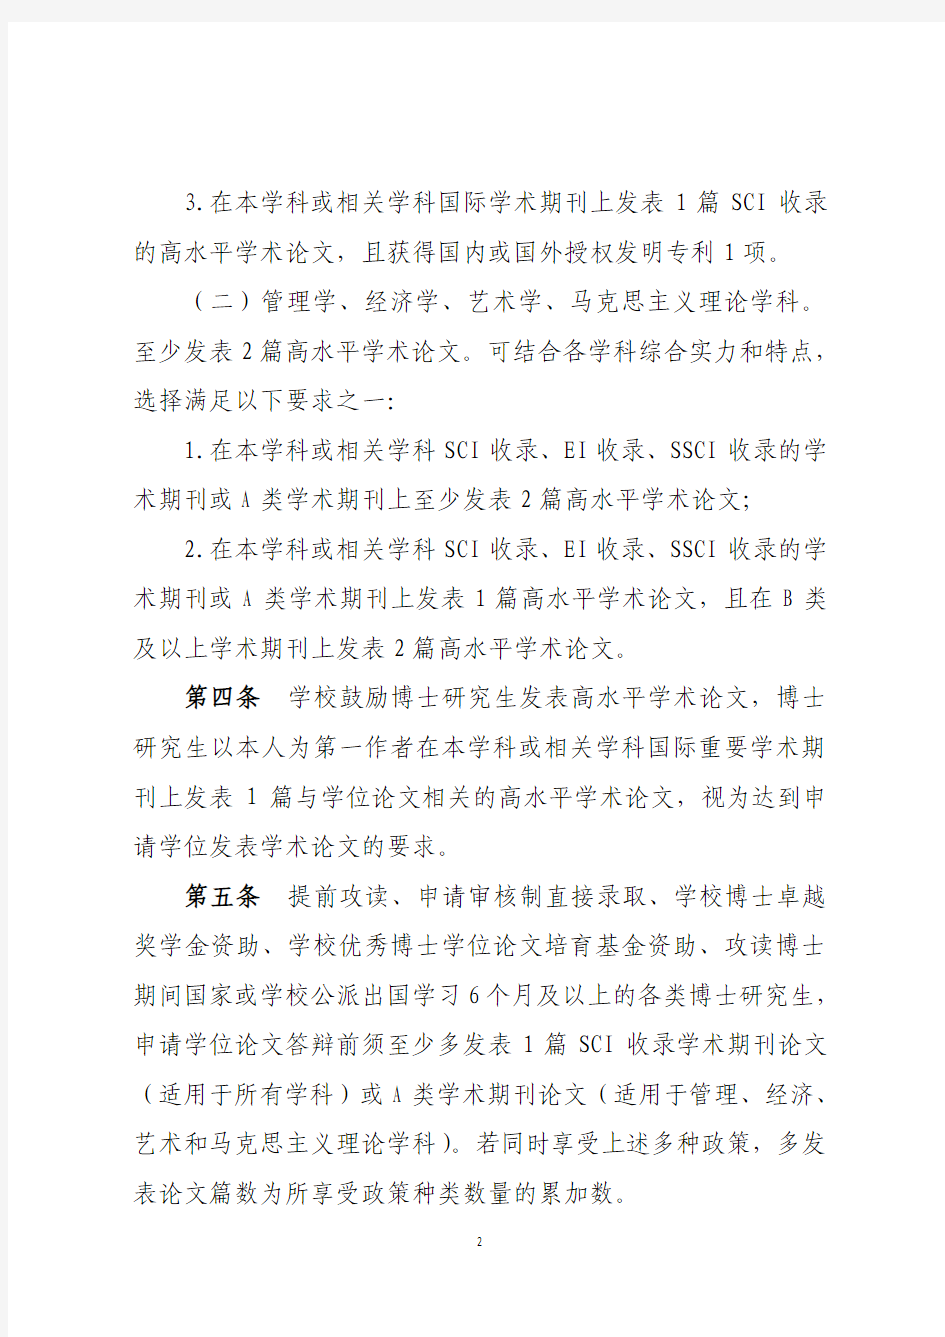 (2014级适用)武汉理工大学研究生申请学位发表学术论文的规定